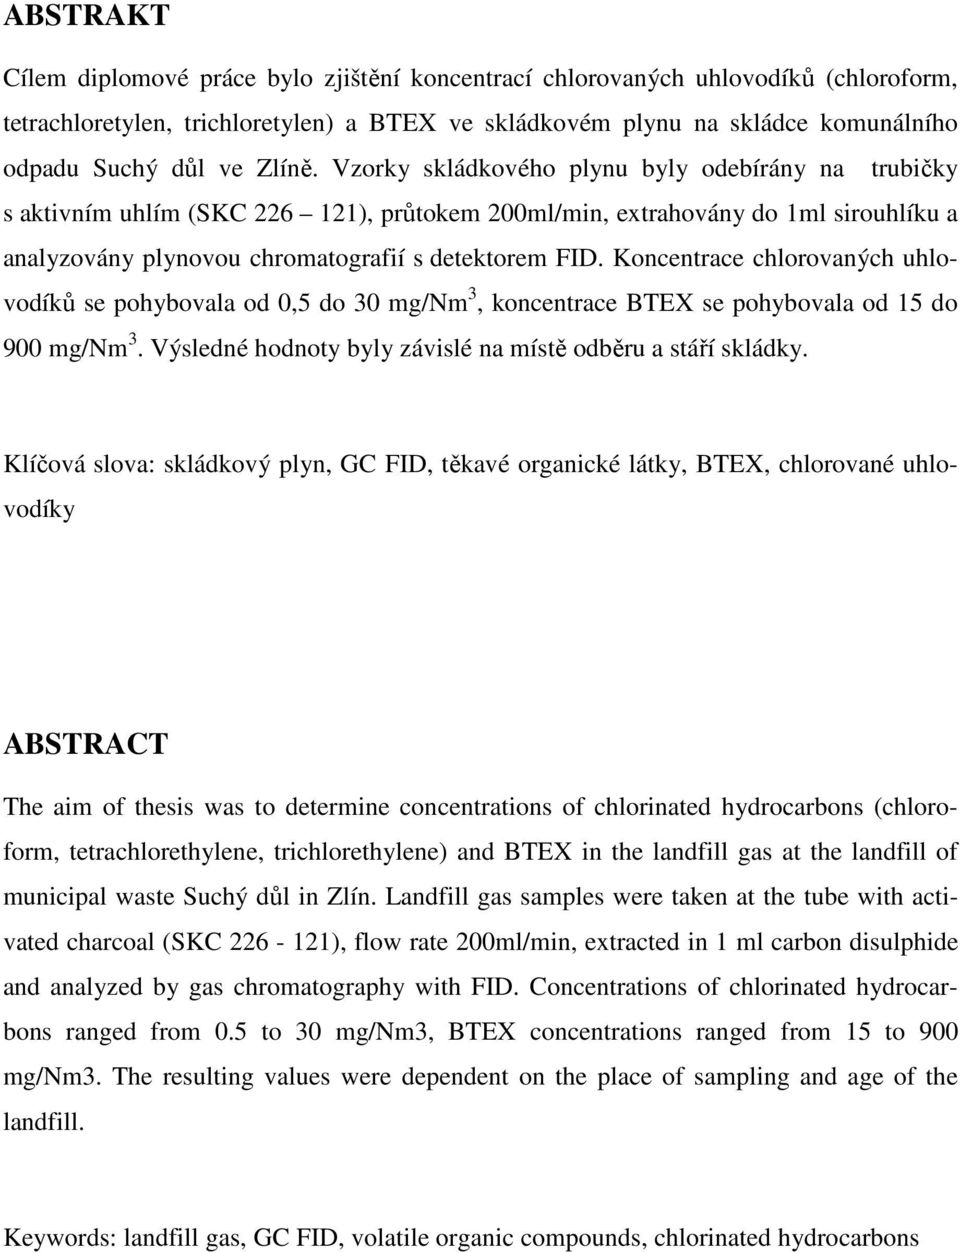 Koncentrace chlorovaných uhlovodíků se pohybovala od 0,5 do 30 mg/nm 3, koncentrace BTEX se pohybovala od 15 do 900 mg/nm 3. Výsledné hodnoty byly závislé na místě odběru a stáří skládky.